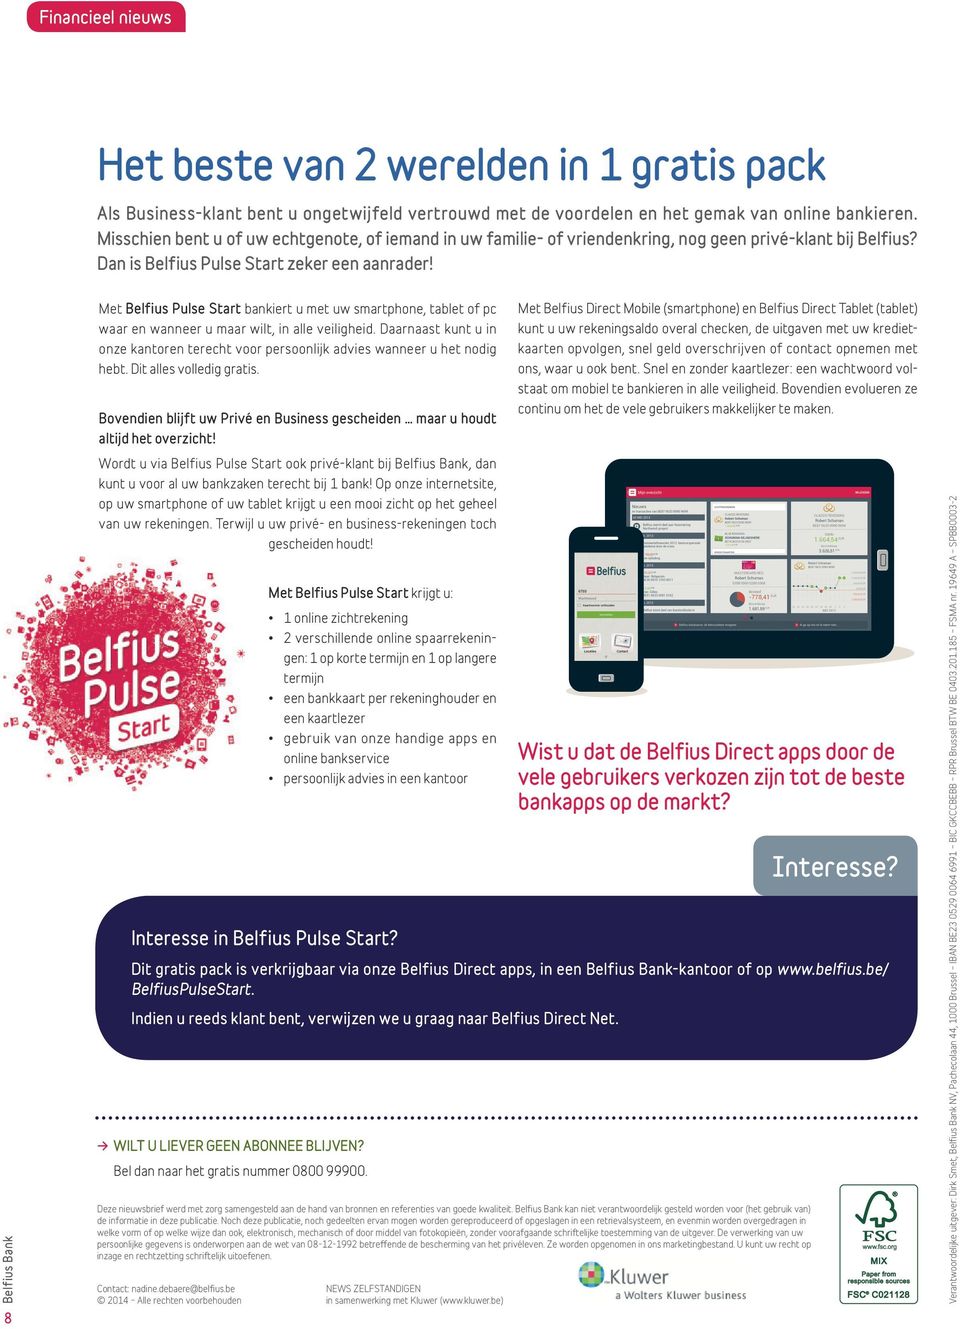 8 Met Belfius Pulse Start bankiert u met uw smartphone, tablet of pc waar en wanneer u maar wilt, in alle veiligheid.